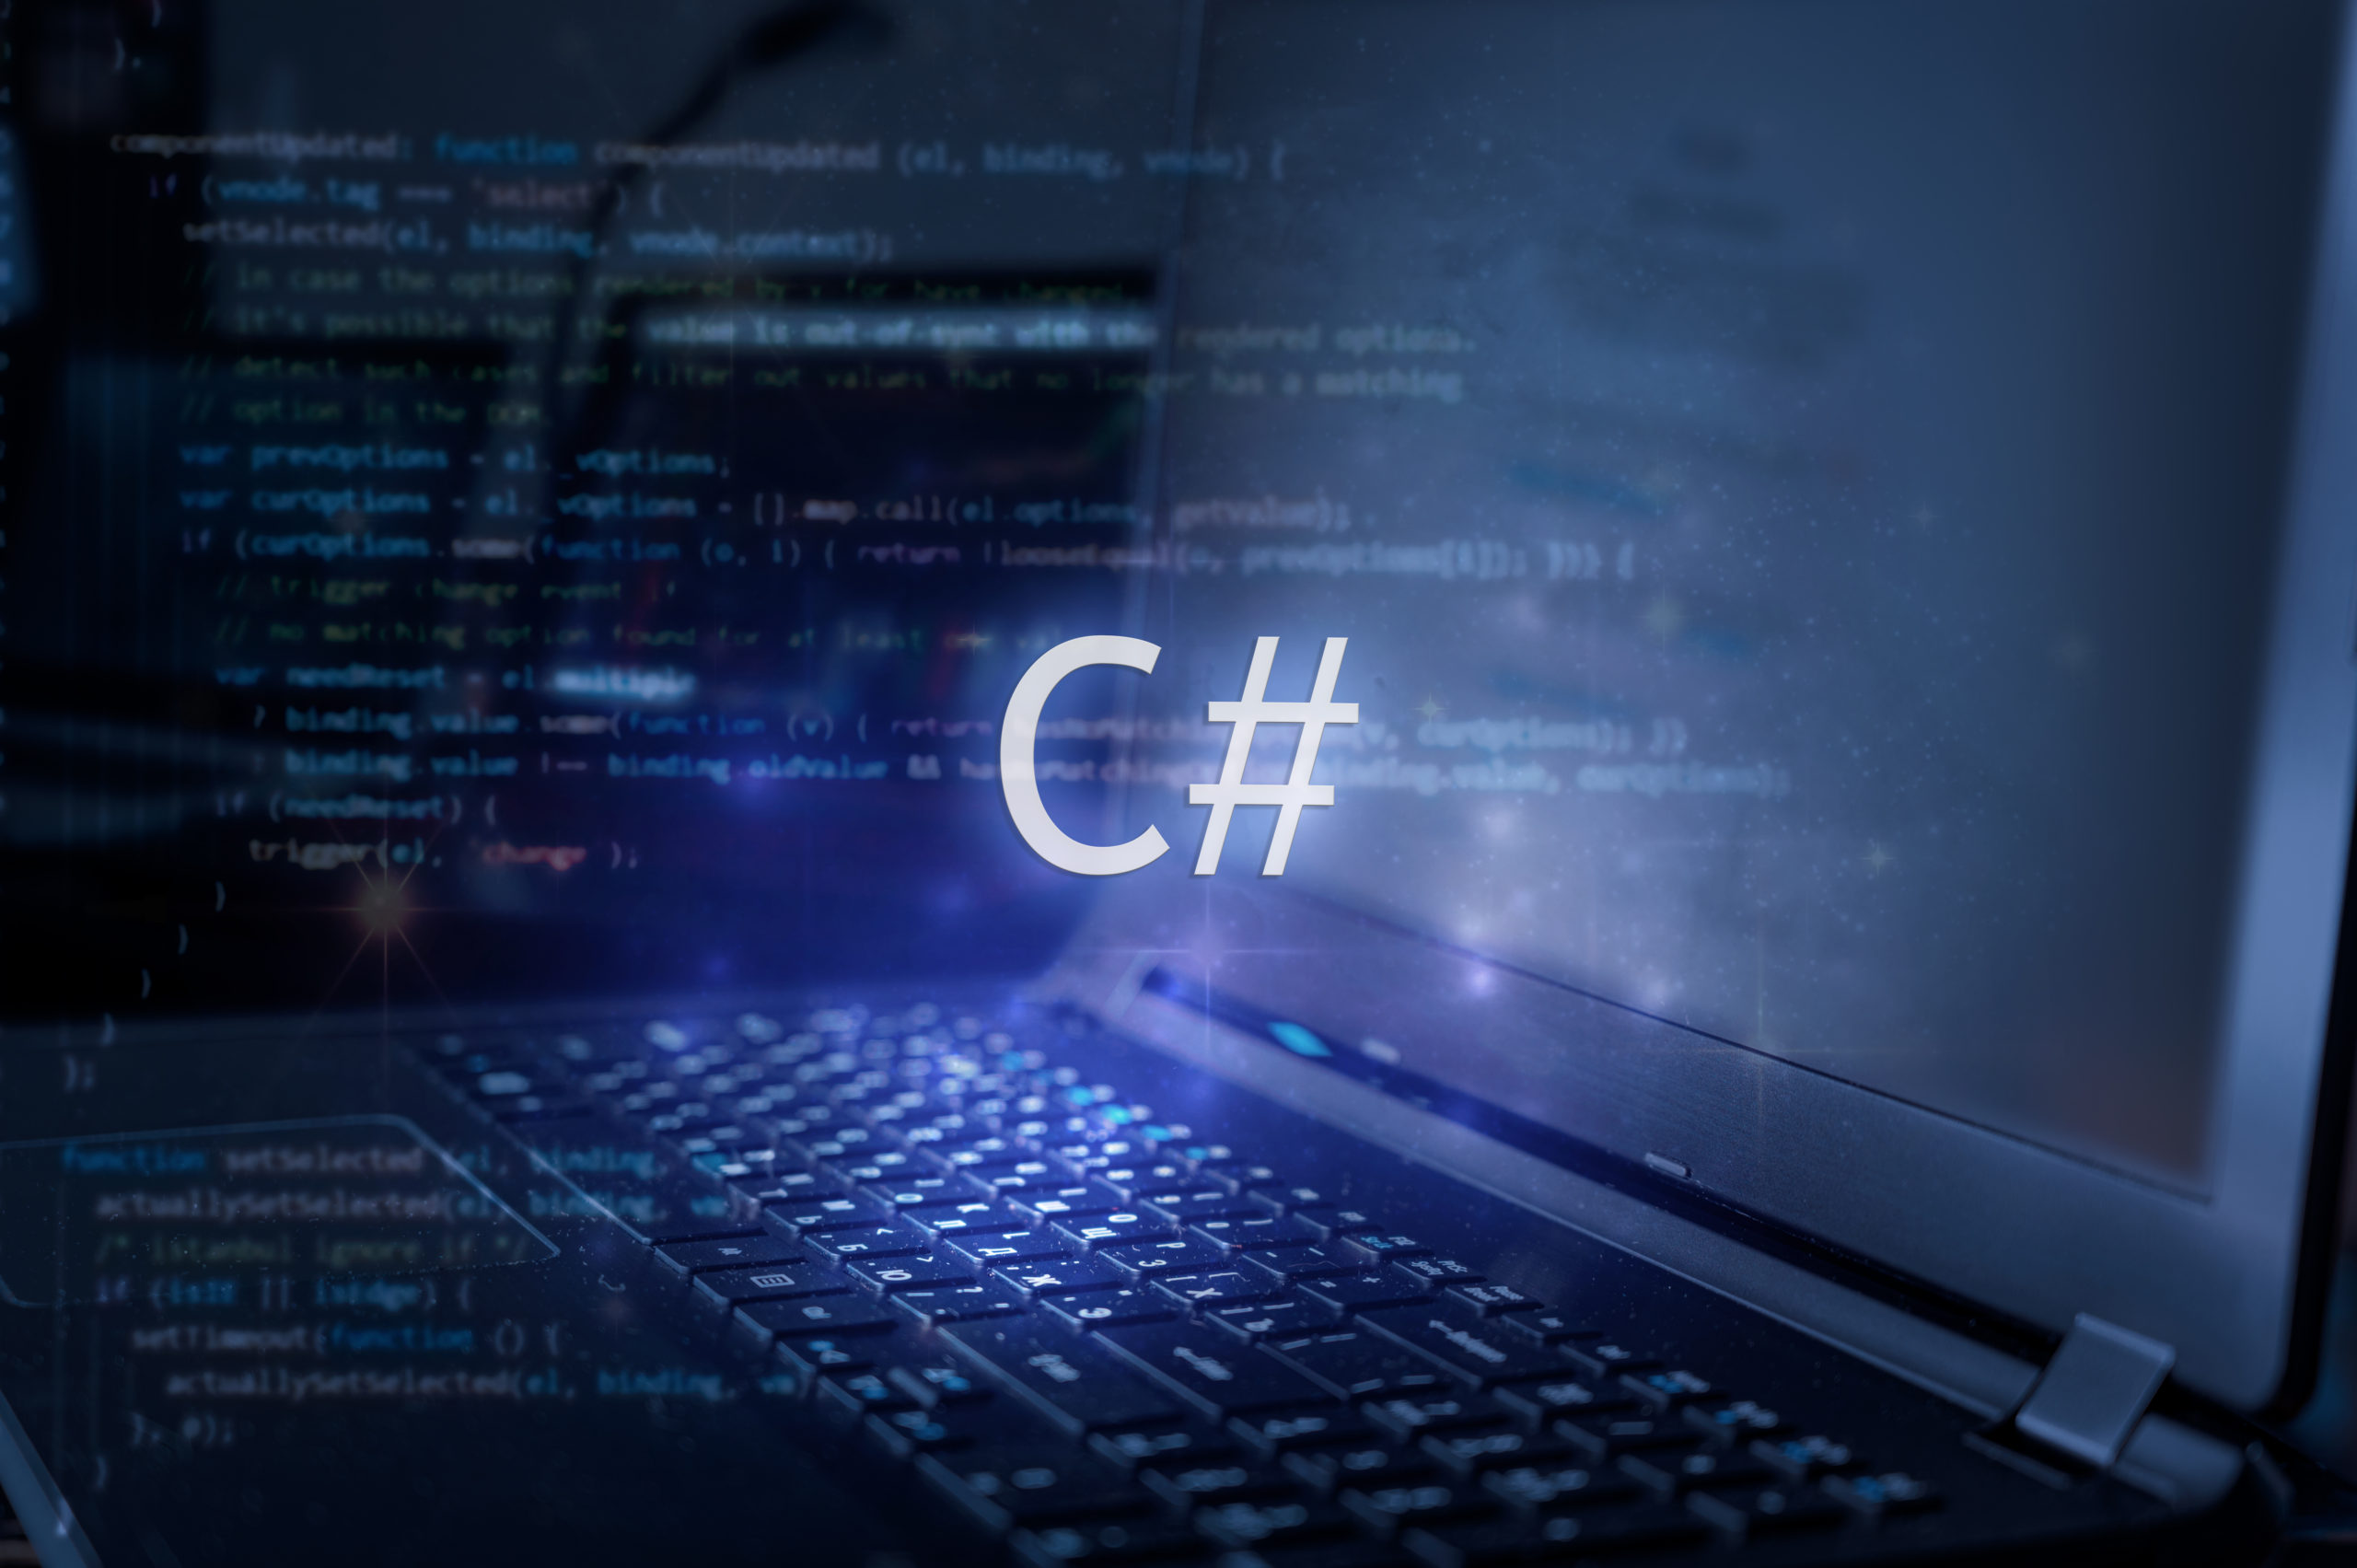 プログラミング言語のC#とは？特徴や開発できるもの、メリット、将来性、勉強方法を解説